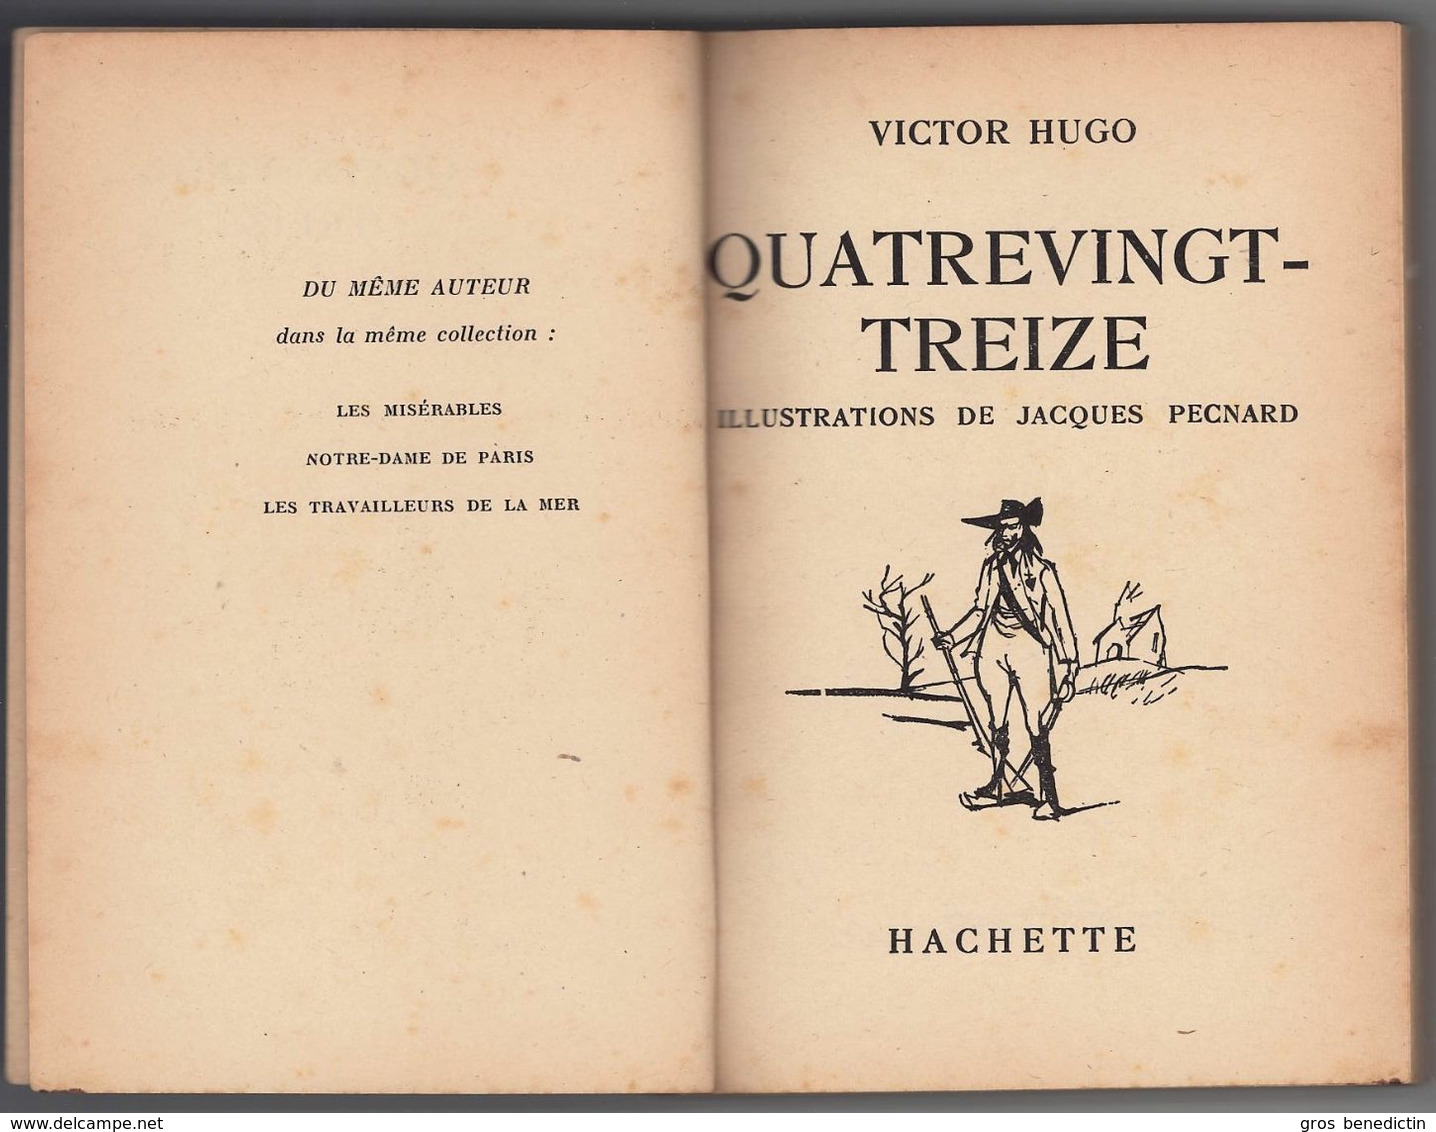 Hachette - Bibliothèque De La Jeunesse Avec Jaquette - Victor Hugo - "Quatrevingt-treize" - 1956 - #Ben&BJanc - Bibliotheque De La Jeunesse